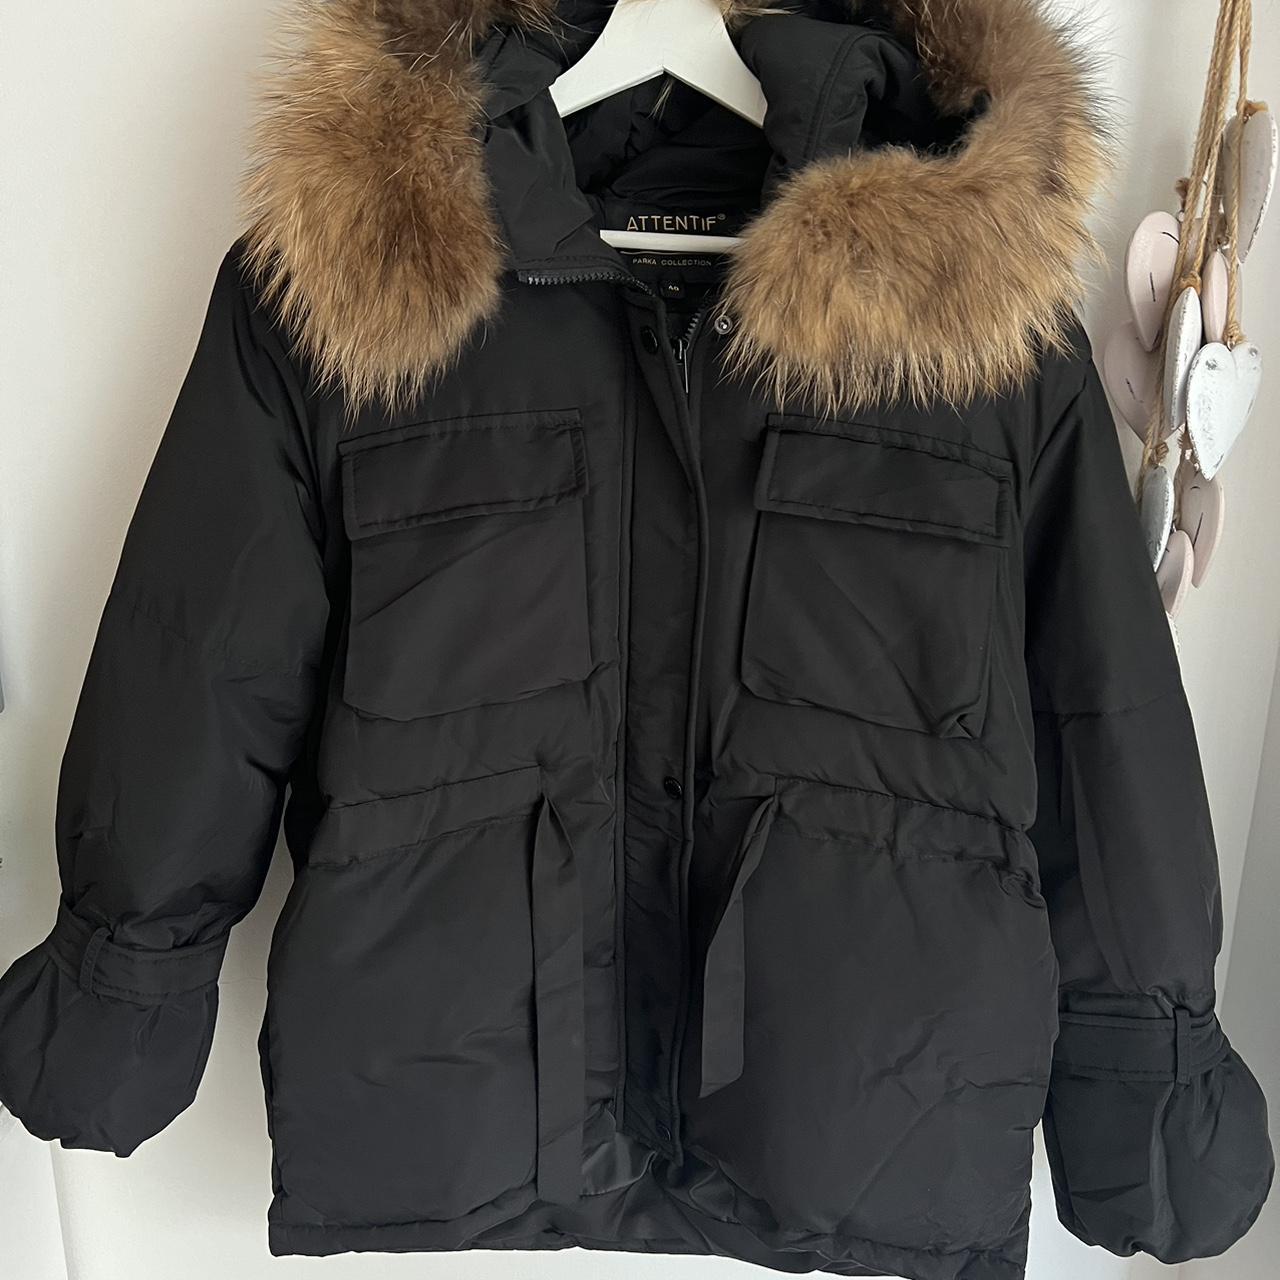 Black fur hood tie up puffer jacket Worn once,... - Depop